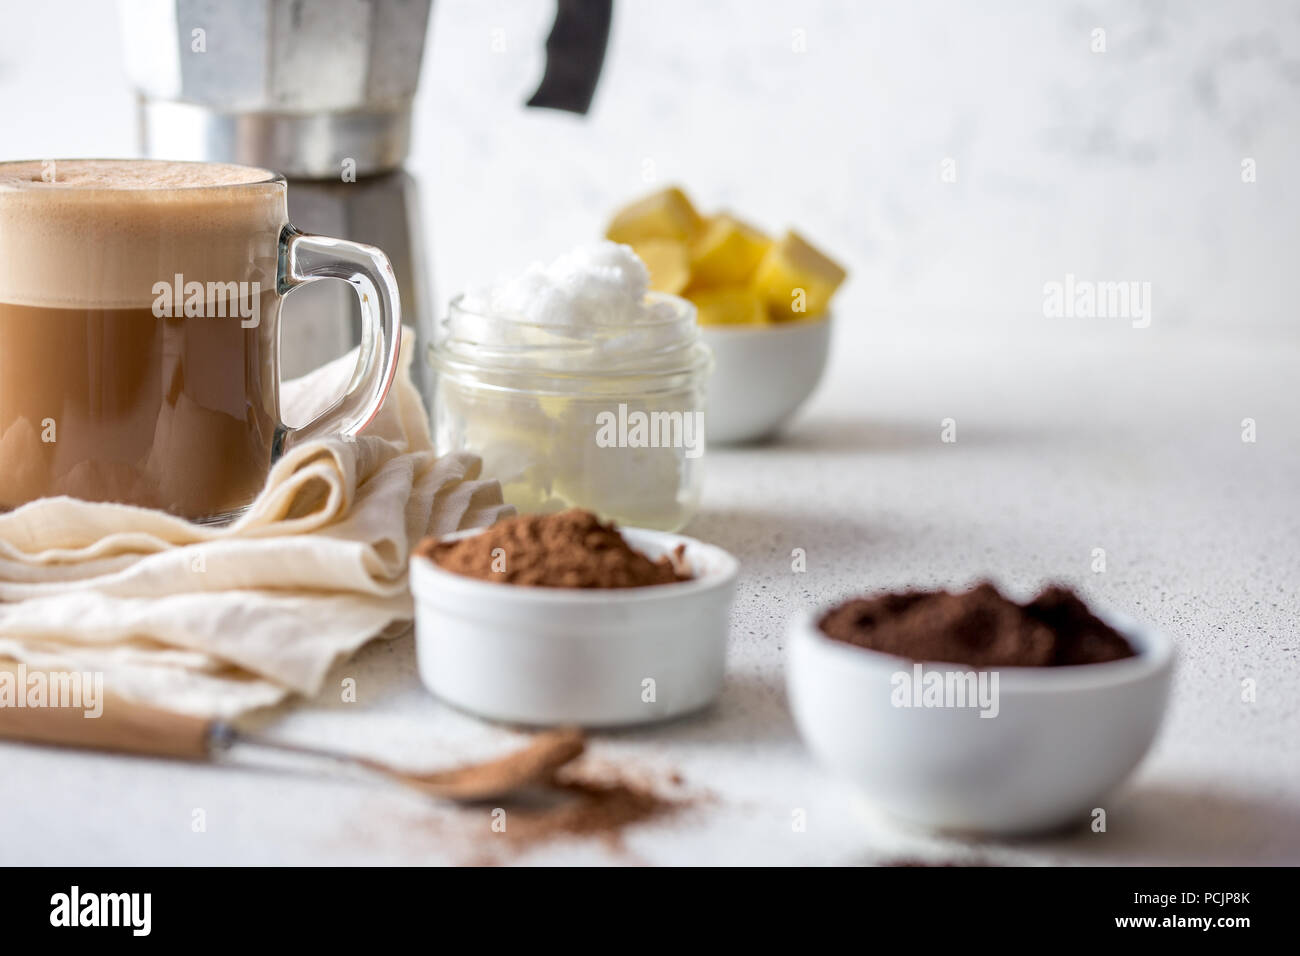 Ceto dieta cetogï¿½ica bebida. Café y cacao mezclado con aceite de coco.  Taza de café antibalas con cacao y los ingredientes sobre fondo blanco  Fotografía de stock - Alamy